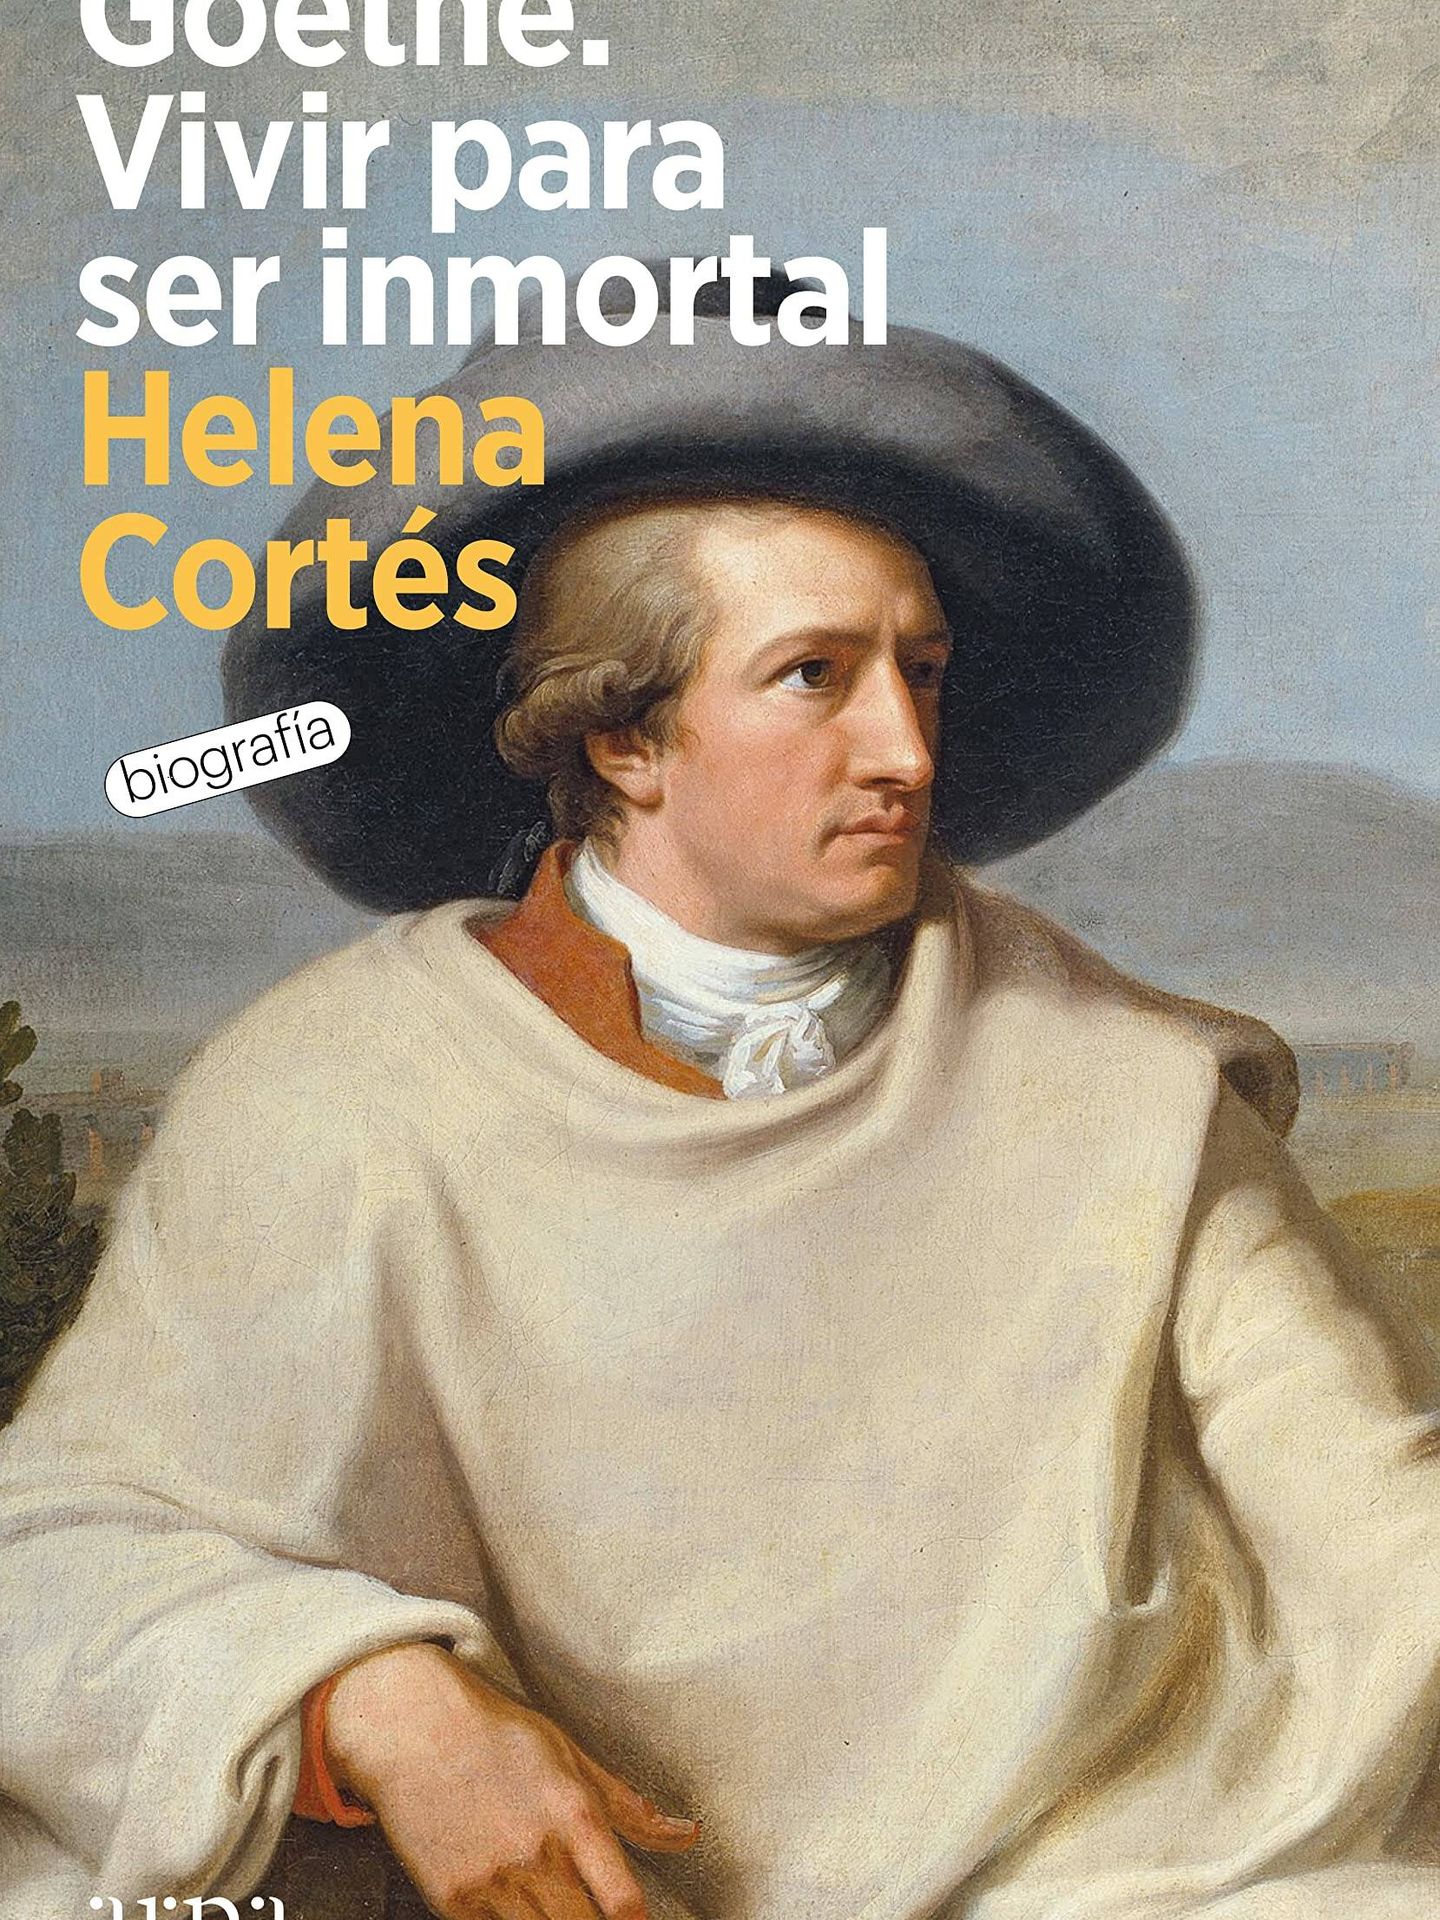 Imagen de portada del libro Goethe, vivir para ser inmortal